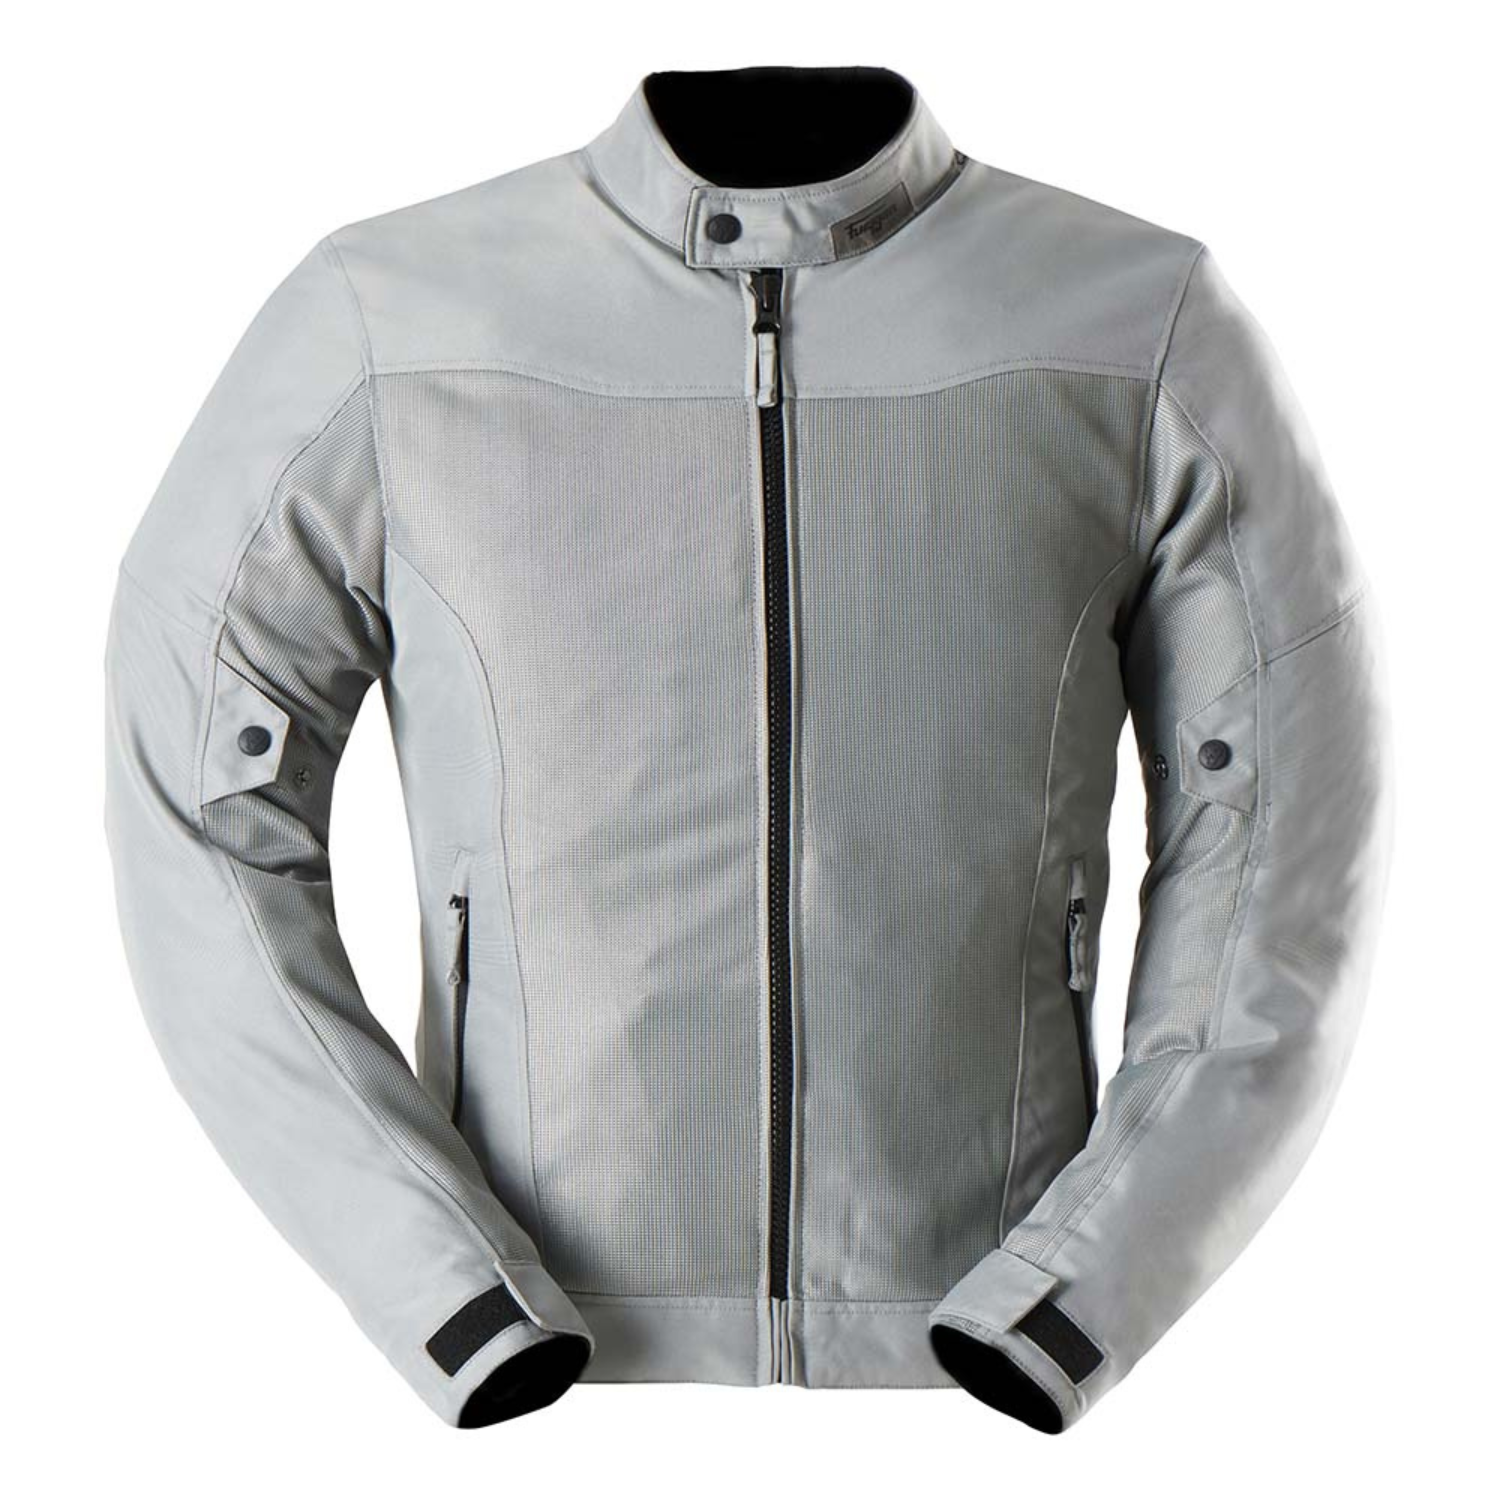 Image of Furygan Mistral Evo 3 Jacket Grey Talla 4XL